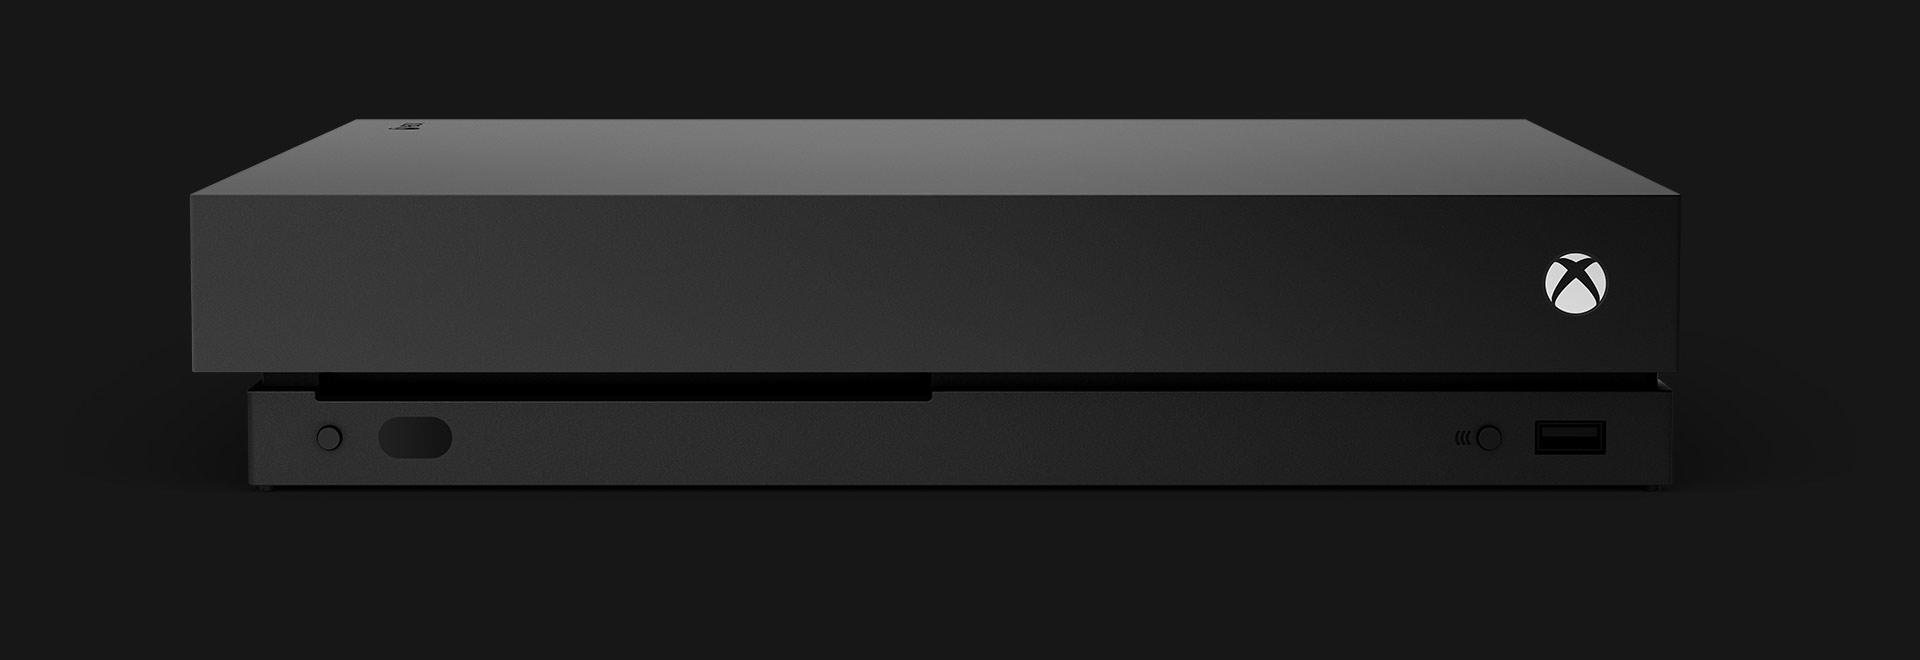 Frontansicht einer Xbox One X-Konsole.